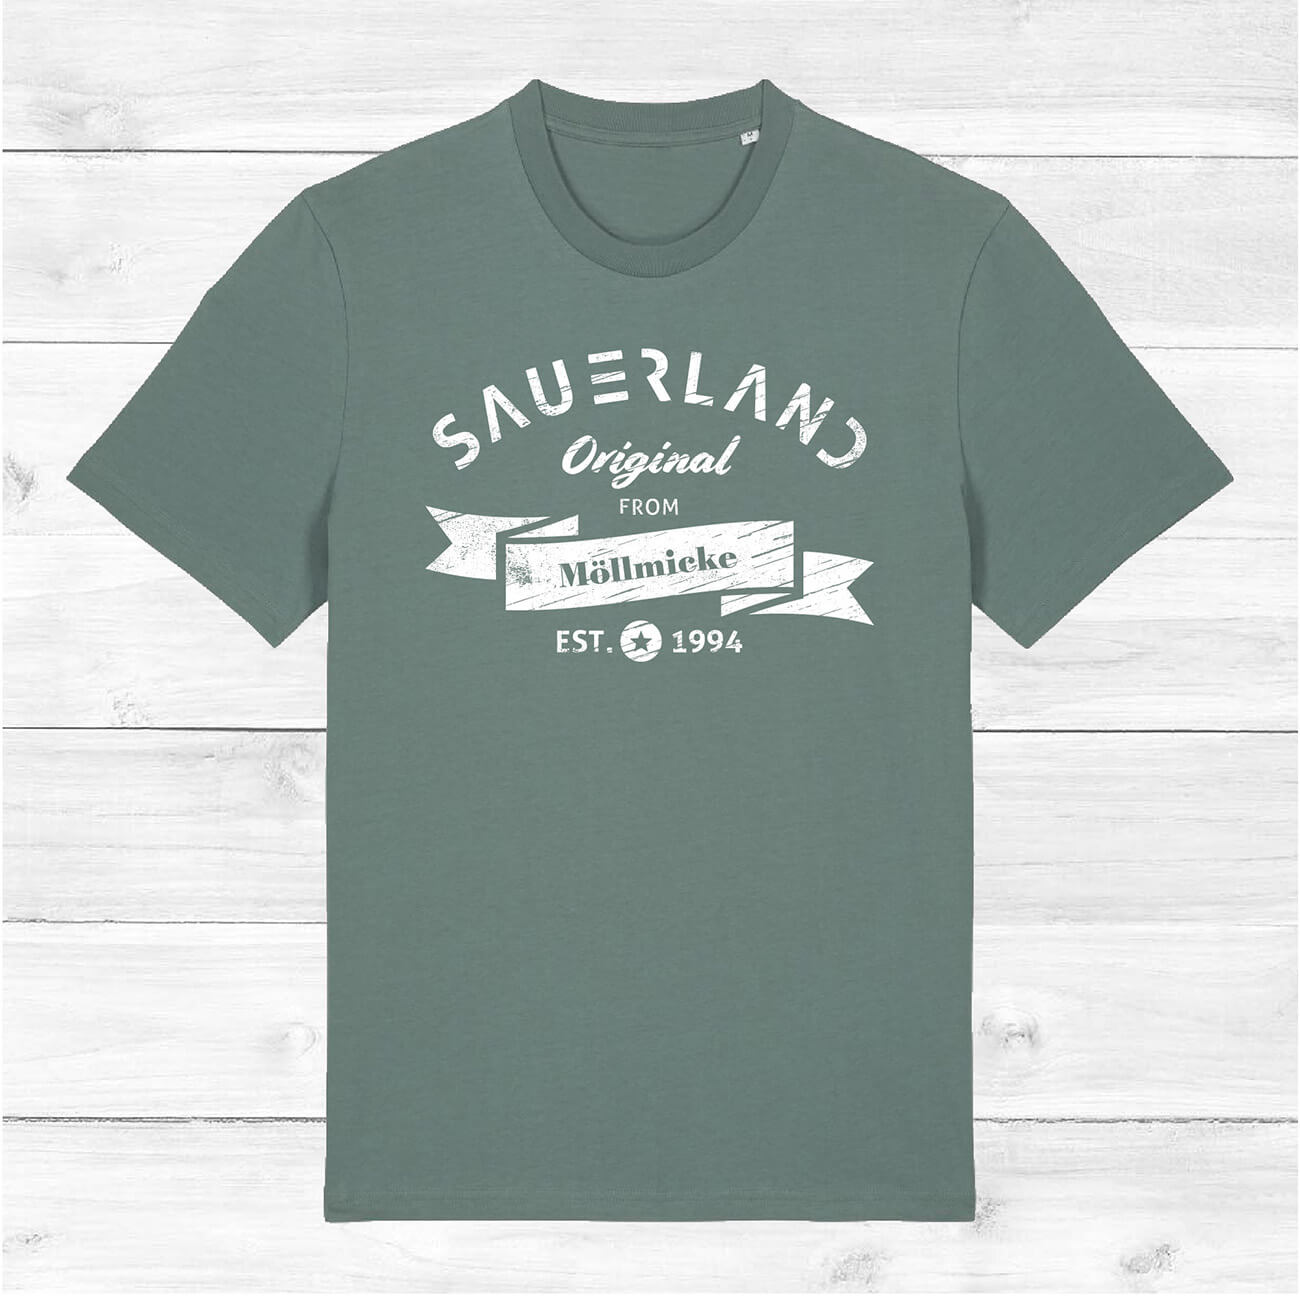 SAUERLAND T-Shirt "Original from"